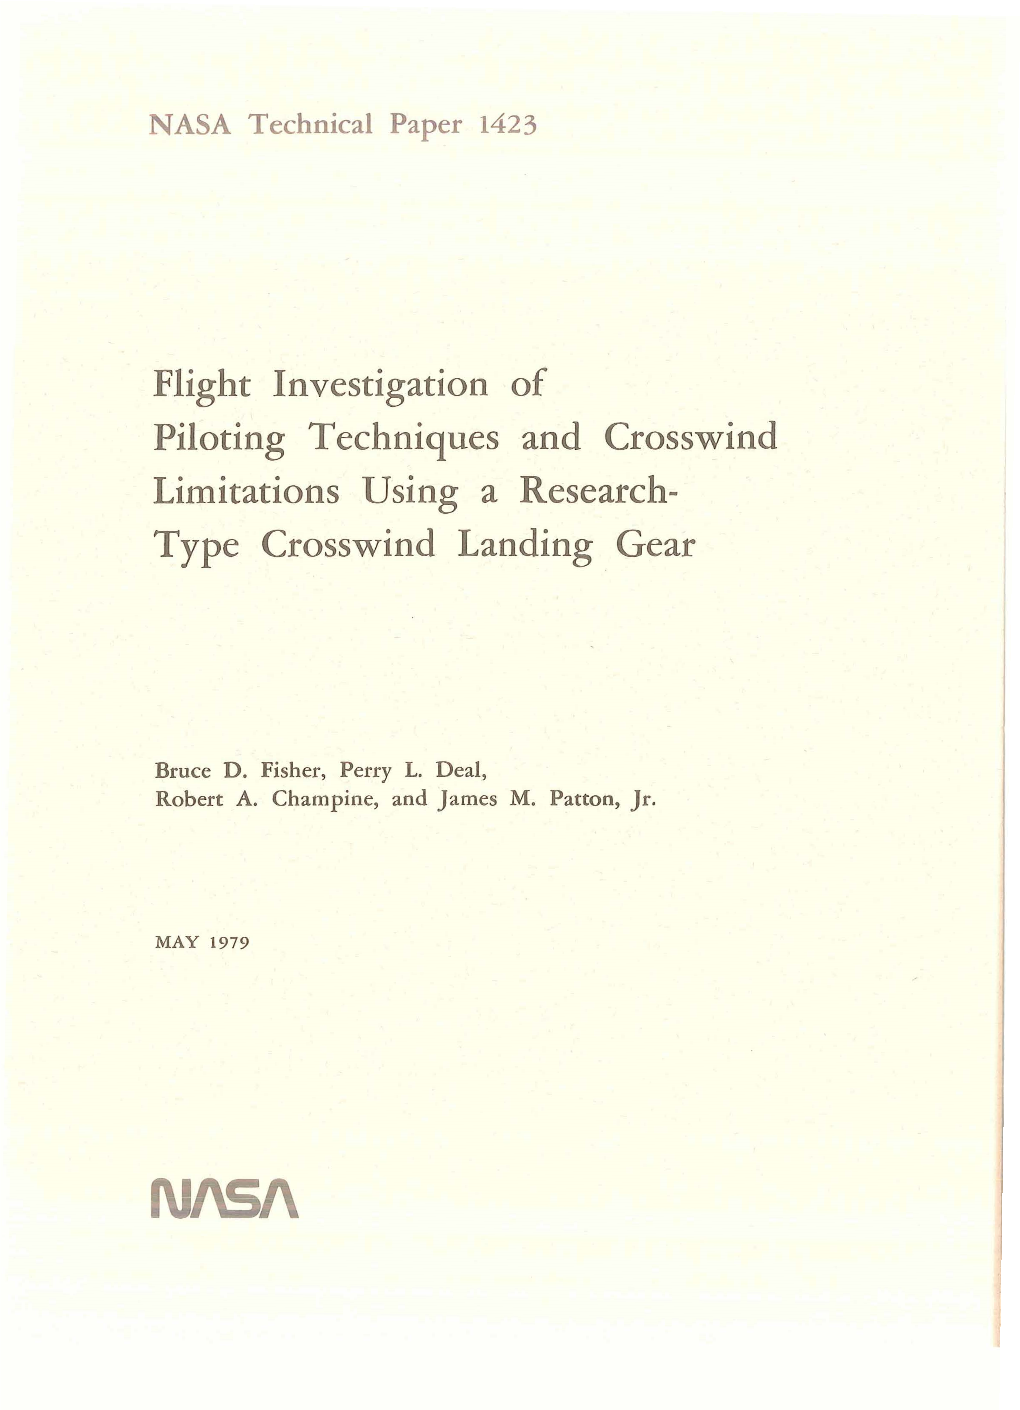 Type Crosswind Landing Gear